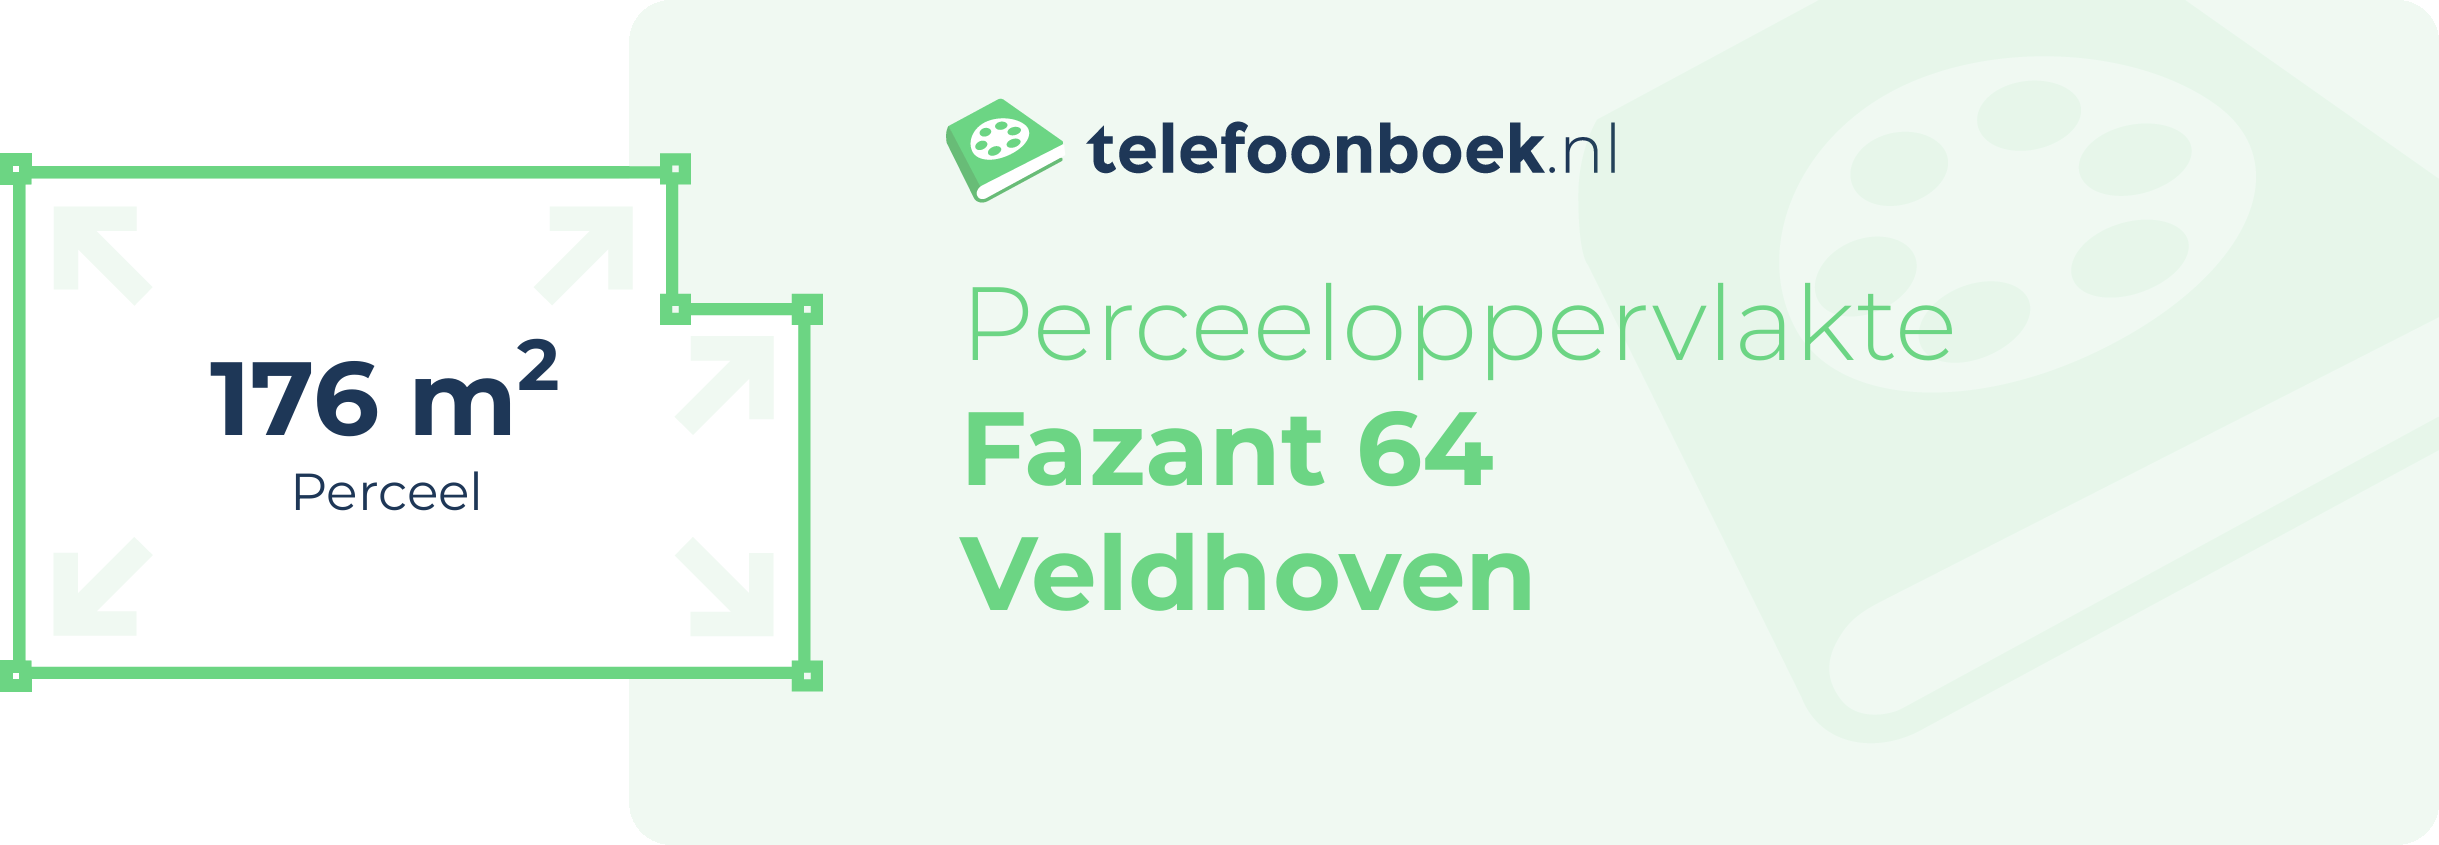 Perceeloppervlakte Fazant 64 Veldhoven